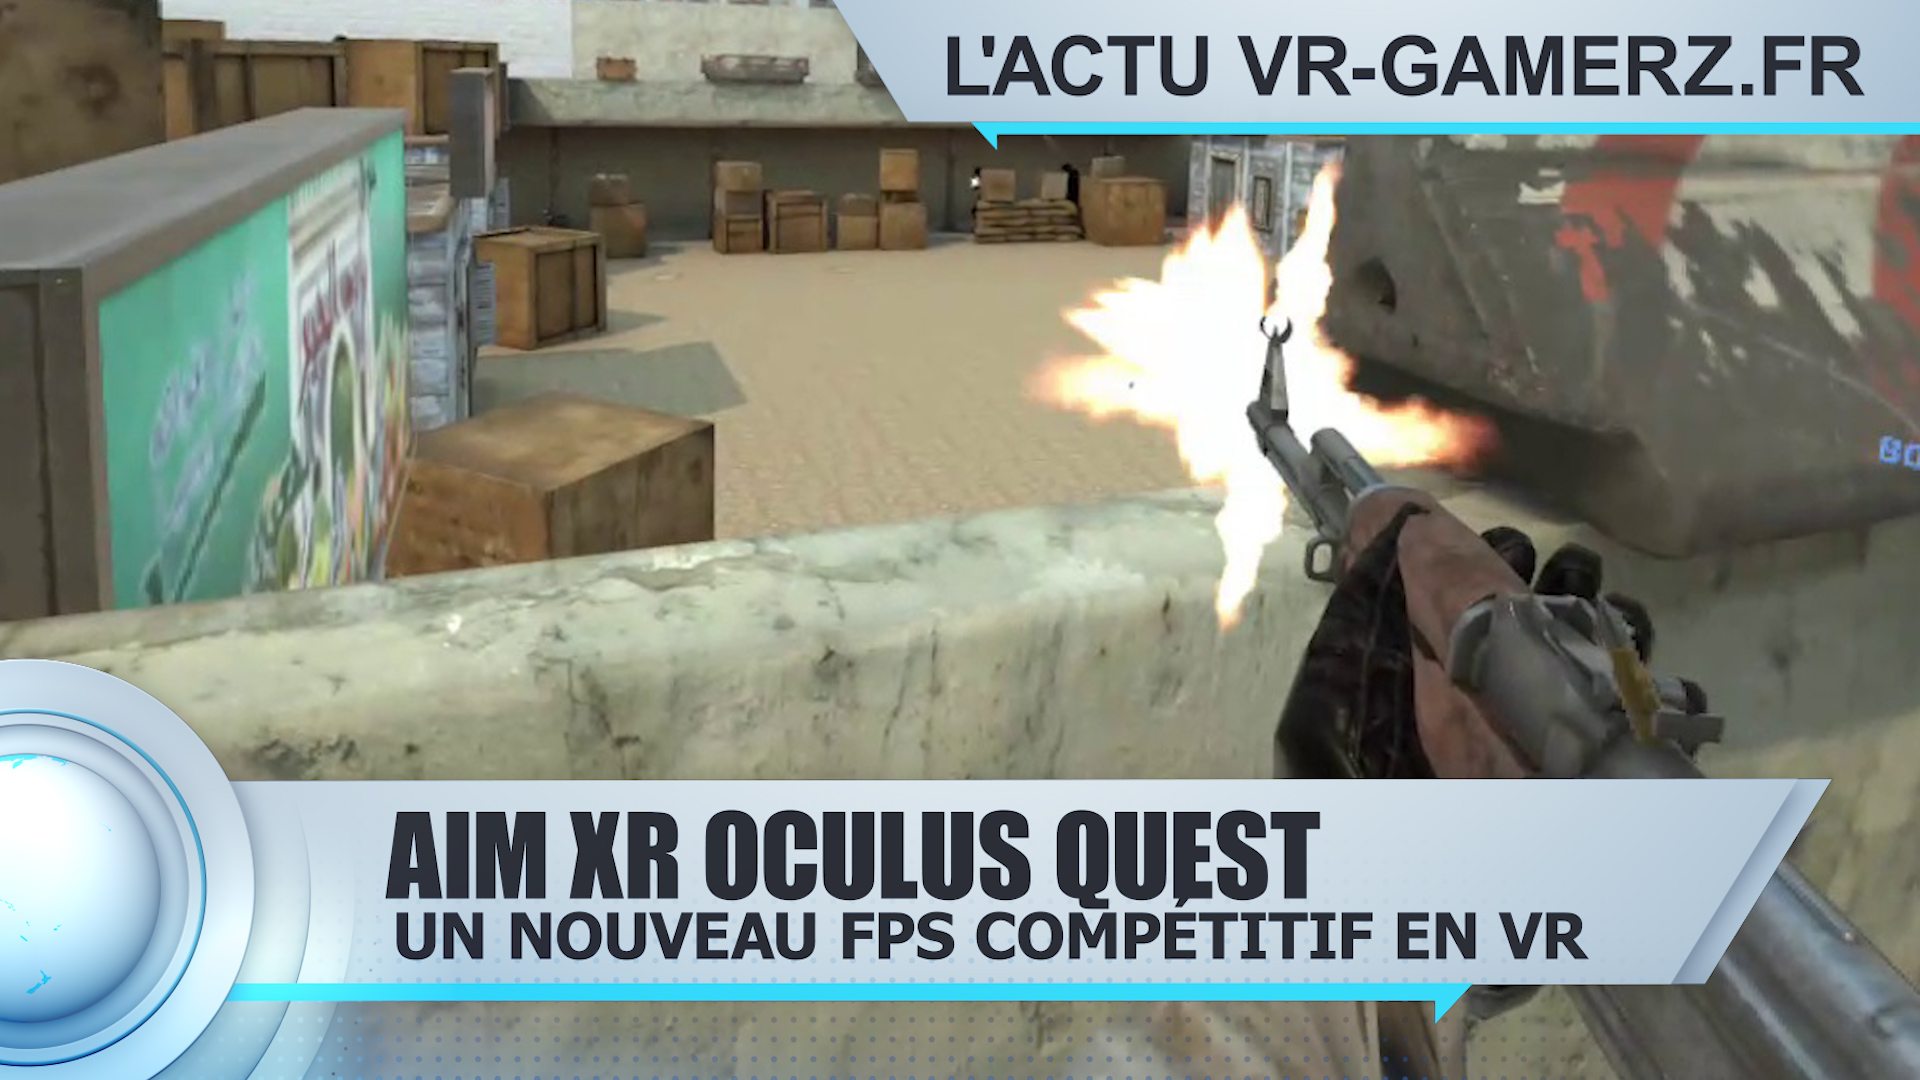 Aim XR Oculus quest : Un nouveau FPS Compétitif en VR